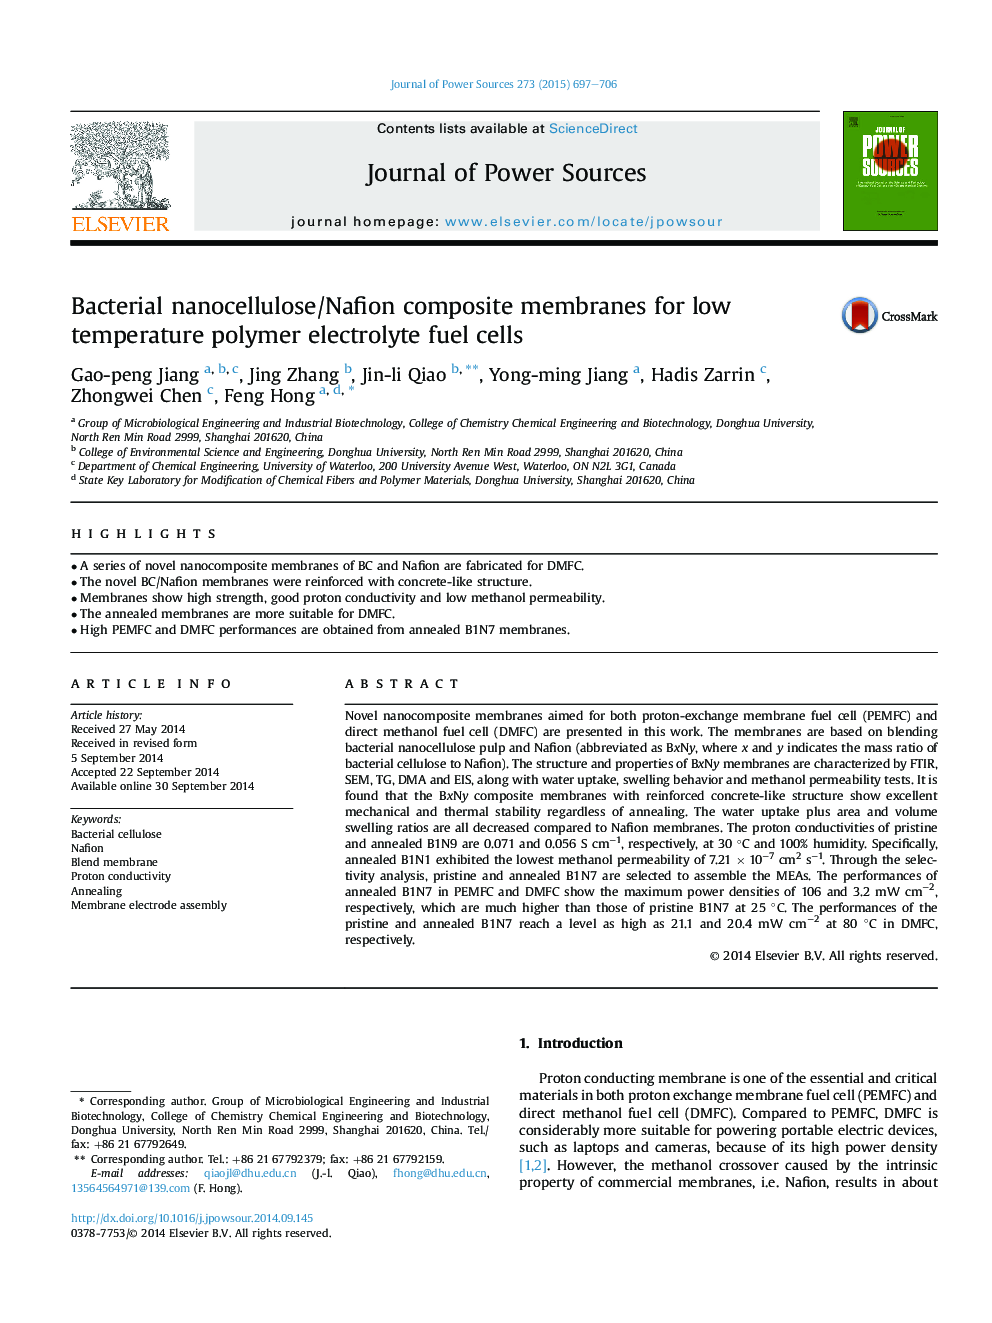 غشای کامپوزیتی نانوسلولوز باکتریایی / نفیون برای سلولهای سوختی الکترولیت پلیمر با دمای پایین 